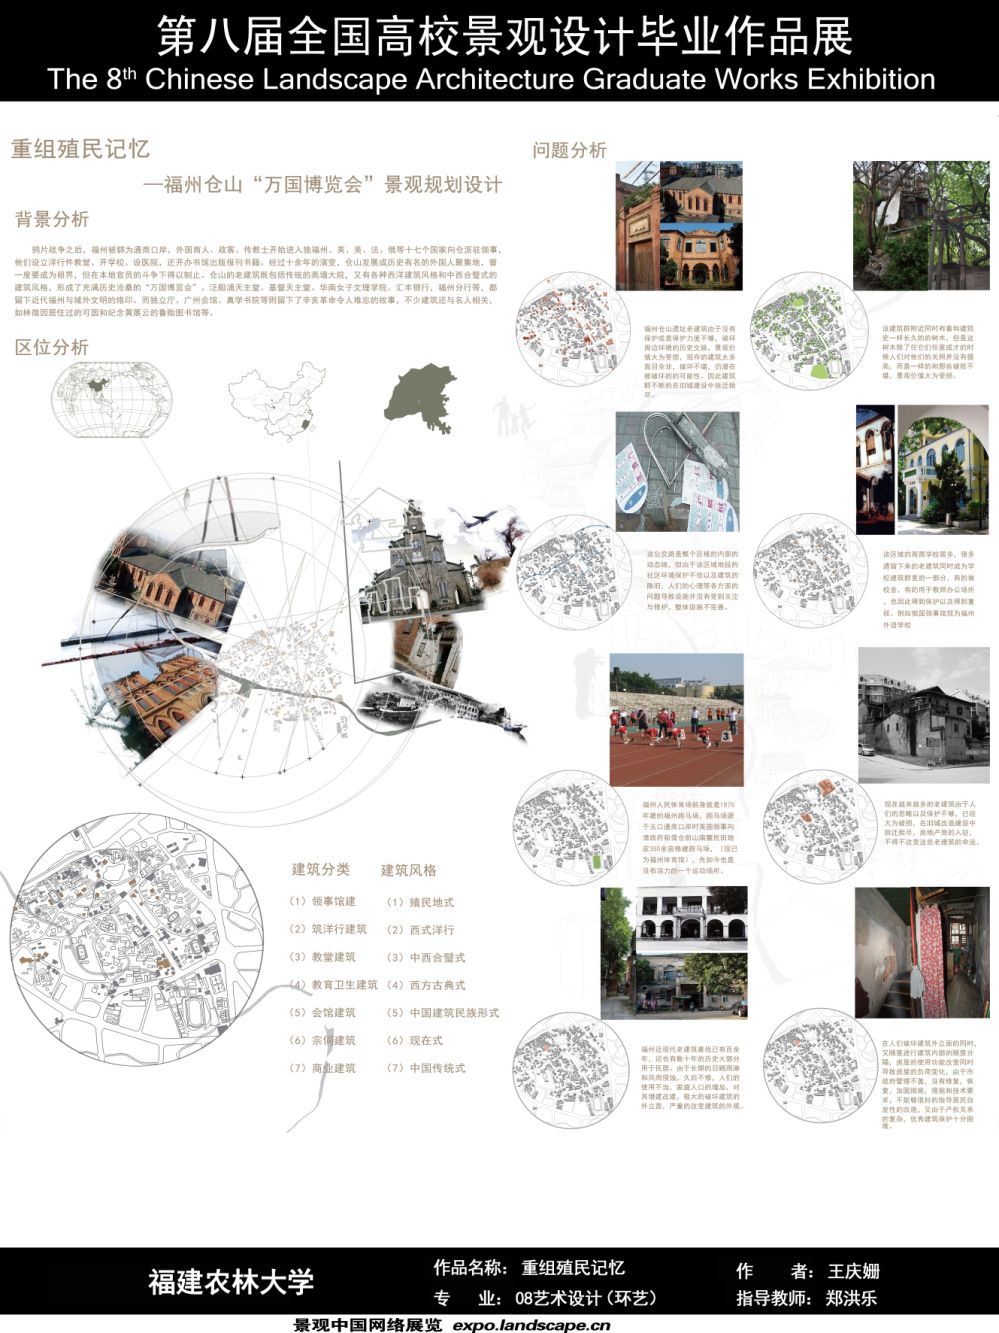 重组殖民记忆-福州仓山万国博览会景观规划设计-1